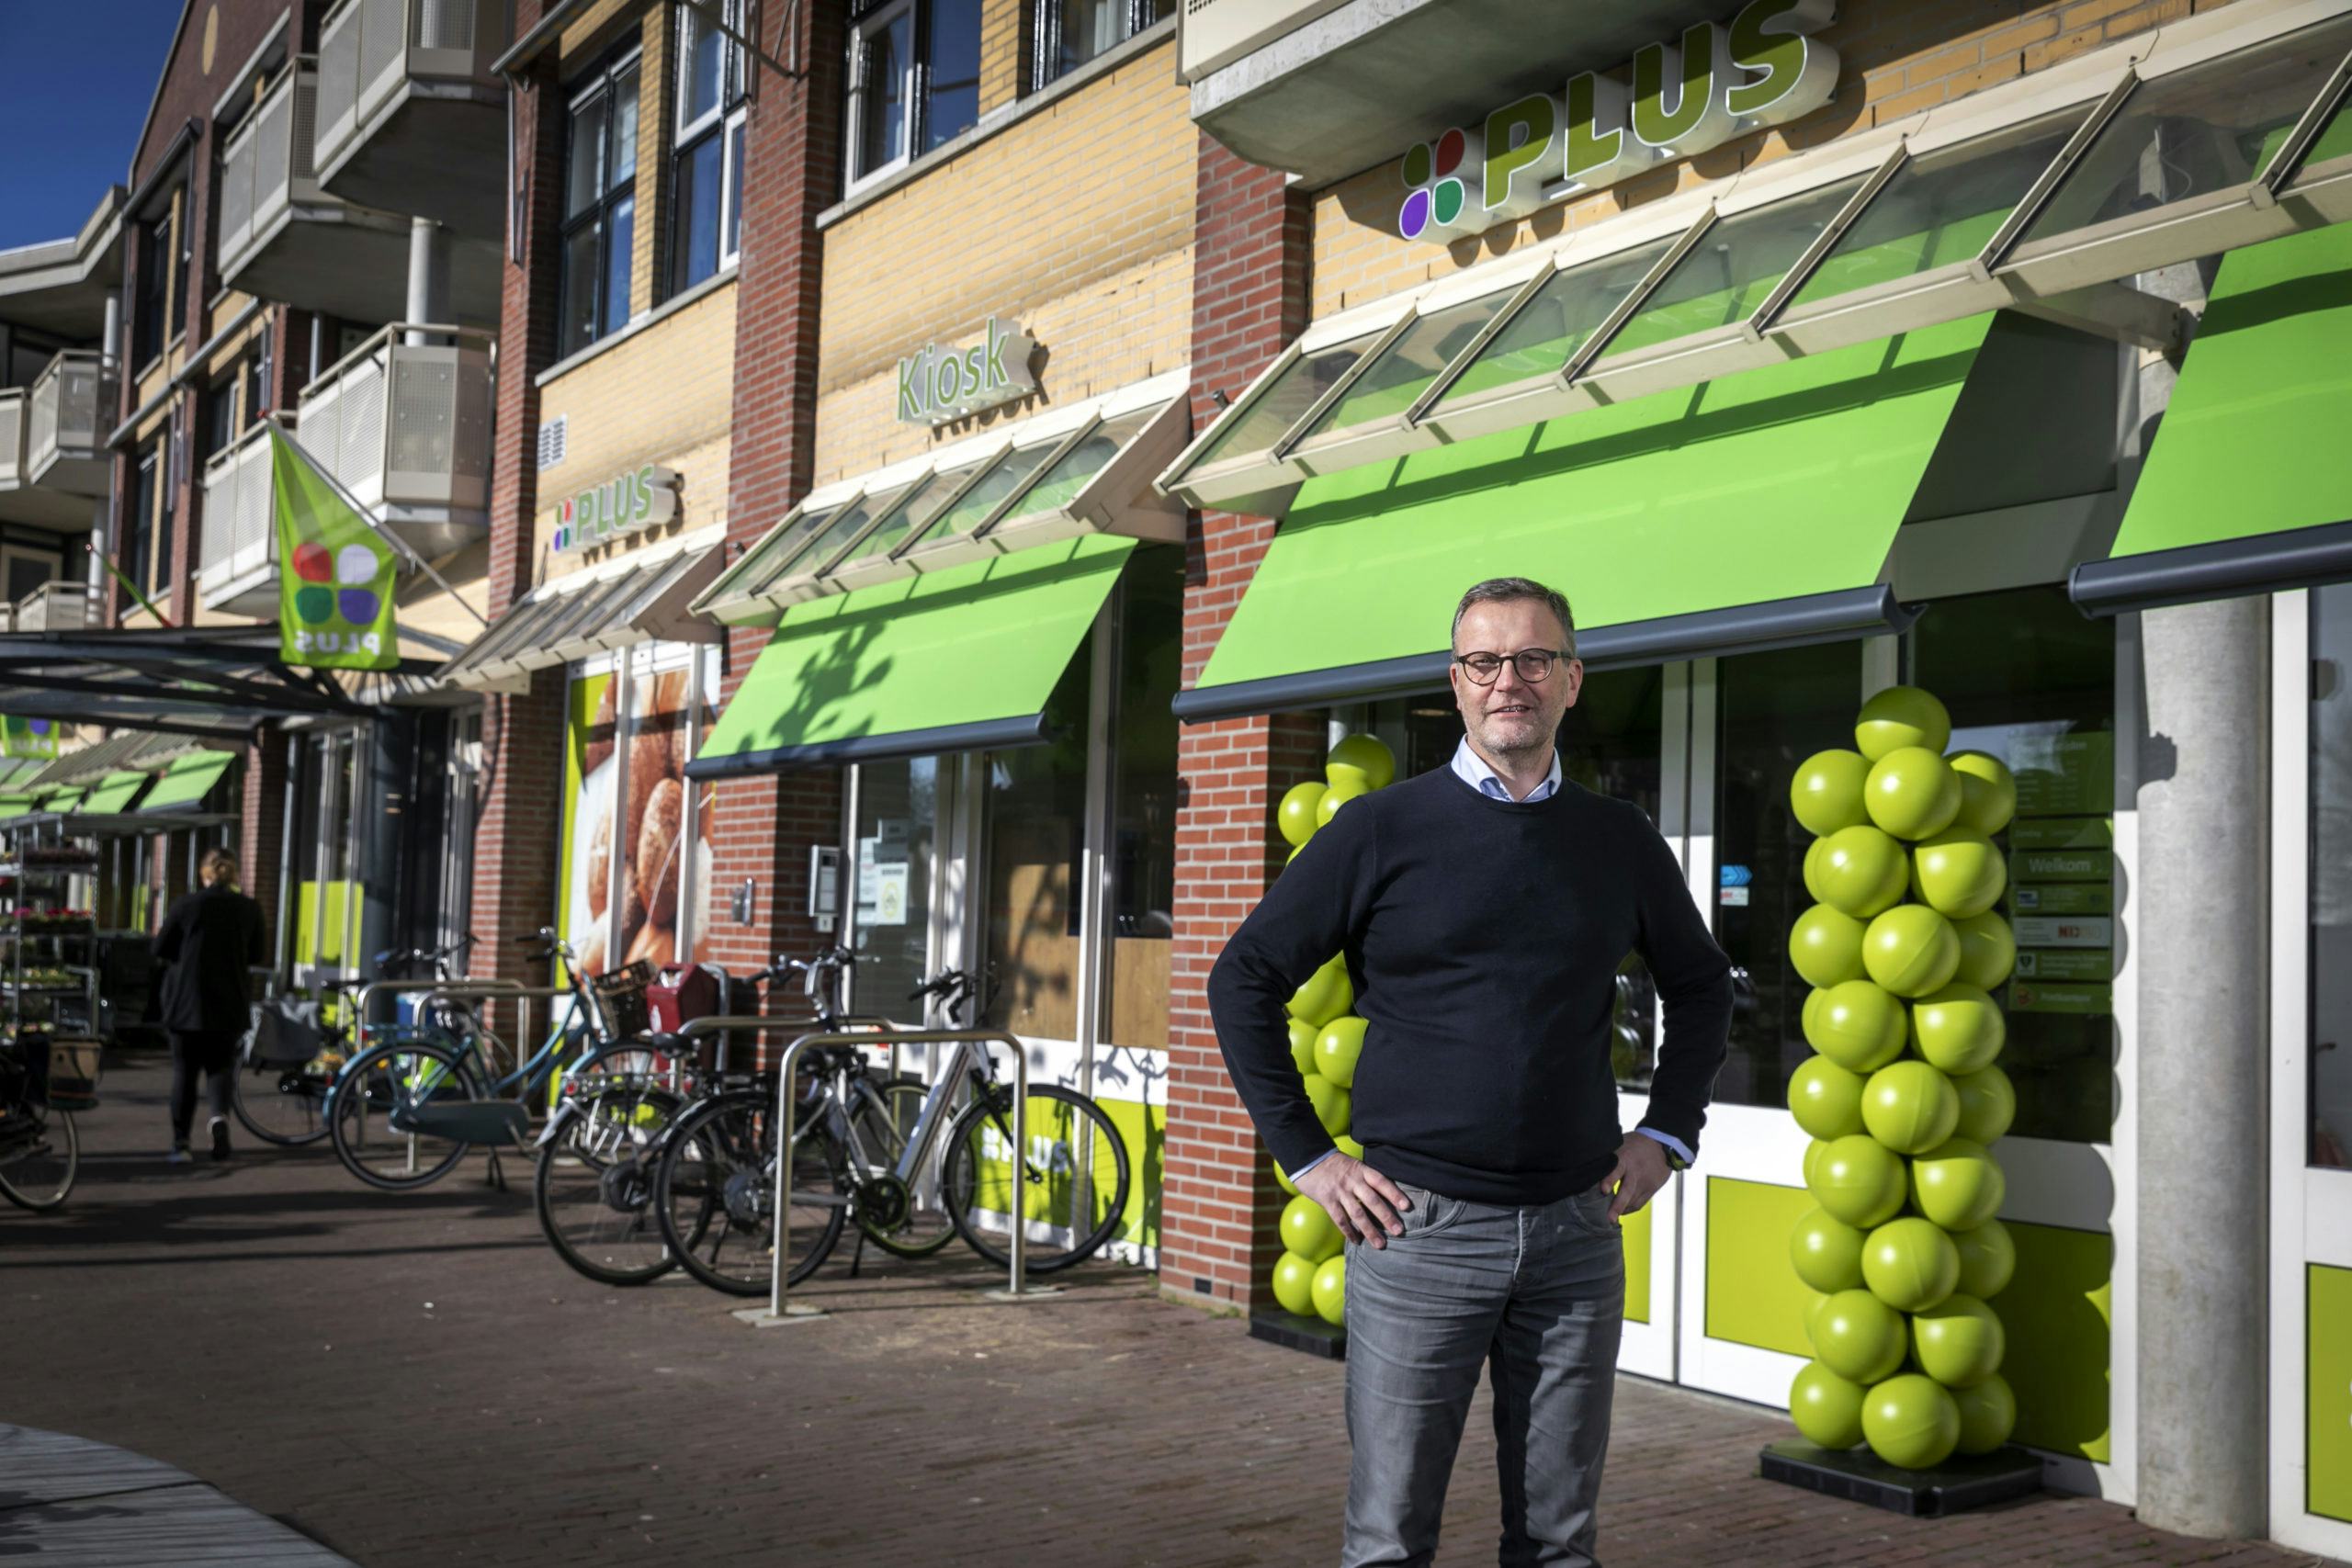 Frans Versteeg voor zijn Plus-supermarkt en Kiosk in Meerkerk. Foto: Roel Dijkstra